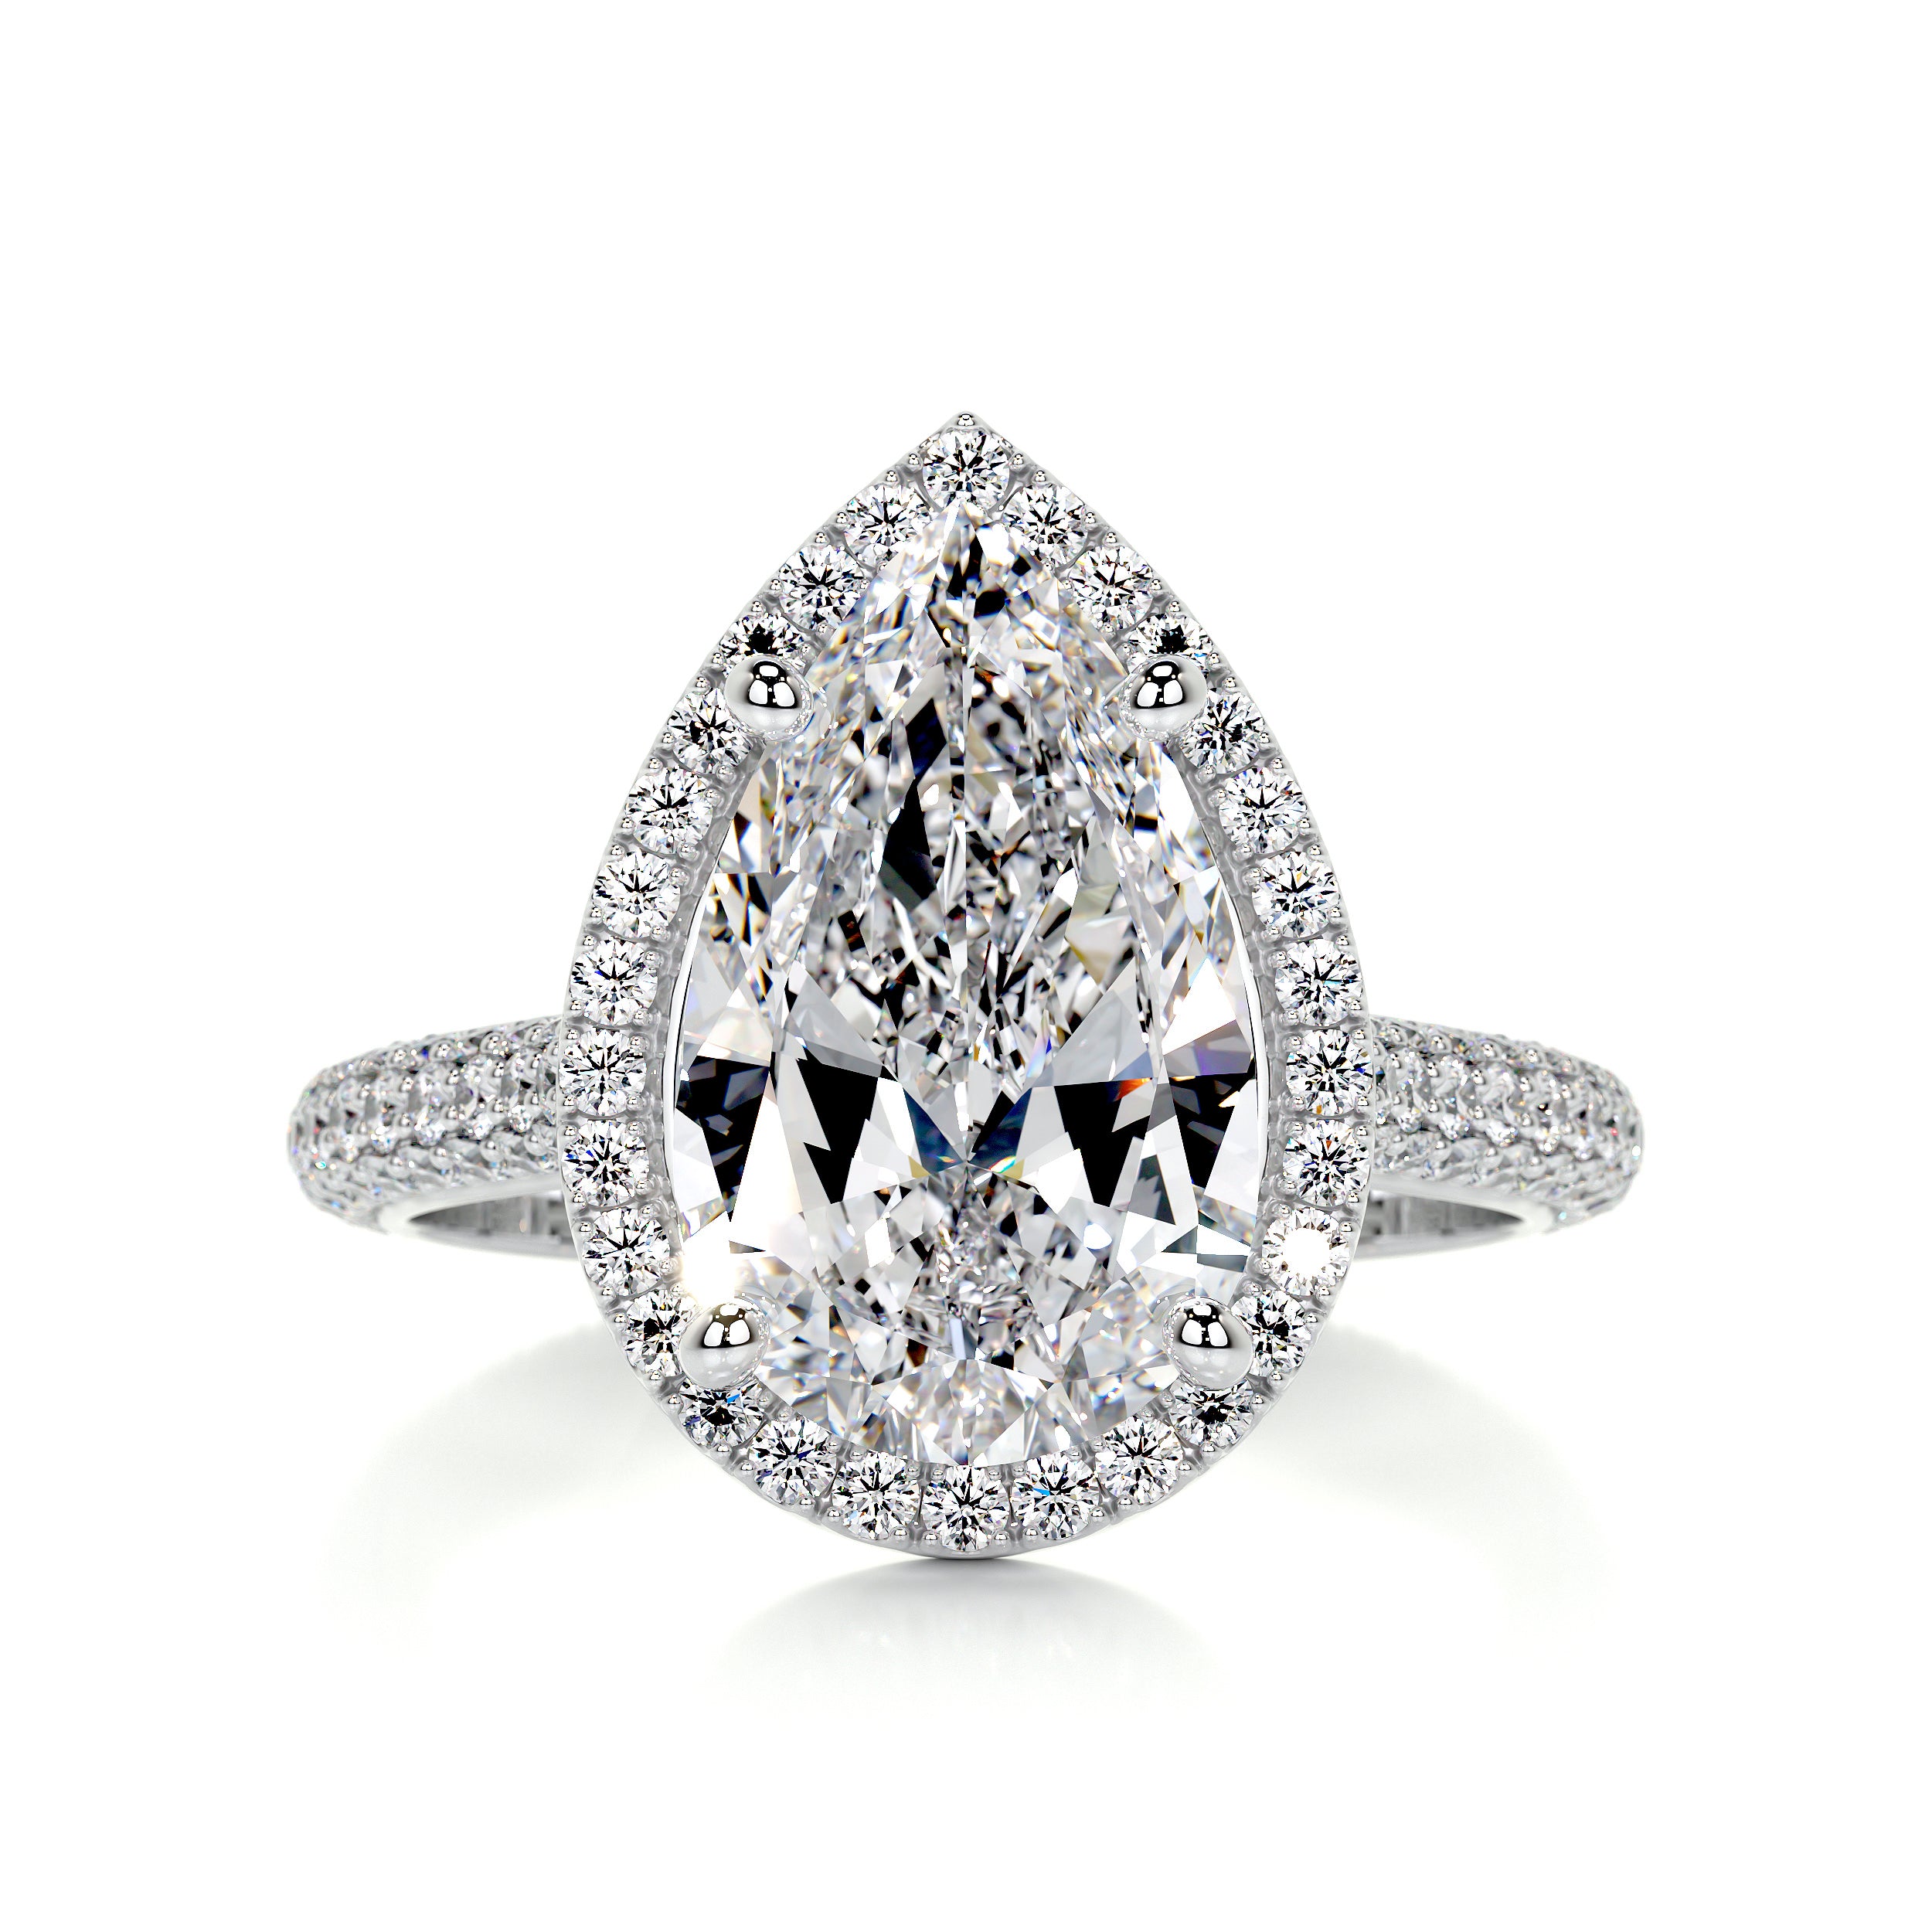 Margarita Diamond Engagement Ring   (3.5 Carat) -18K White Gold